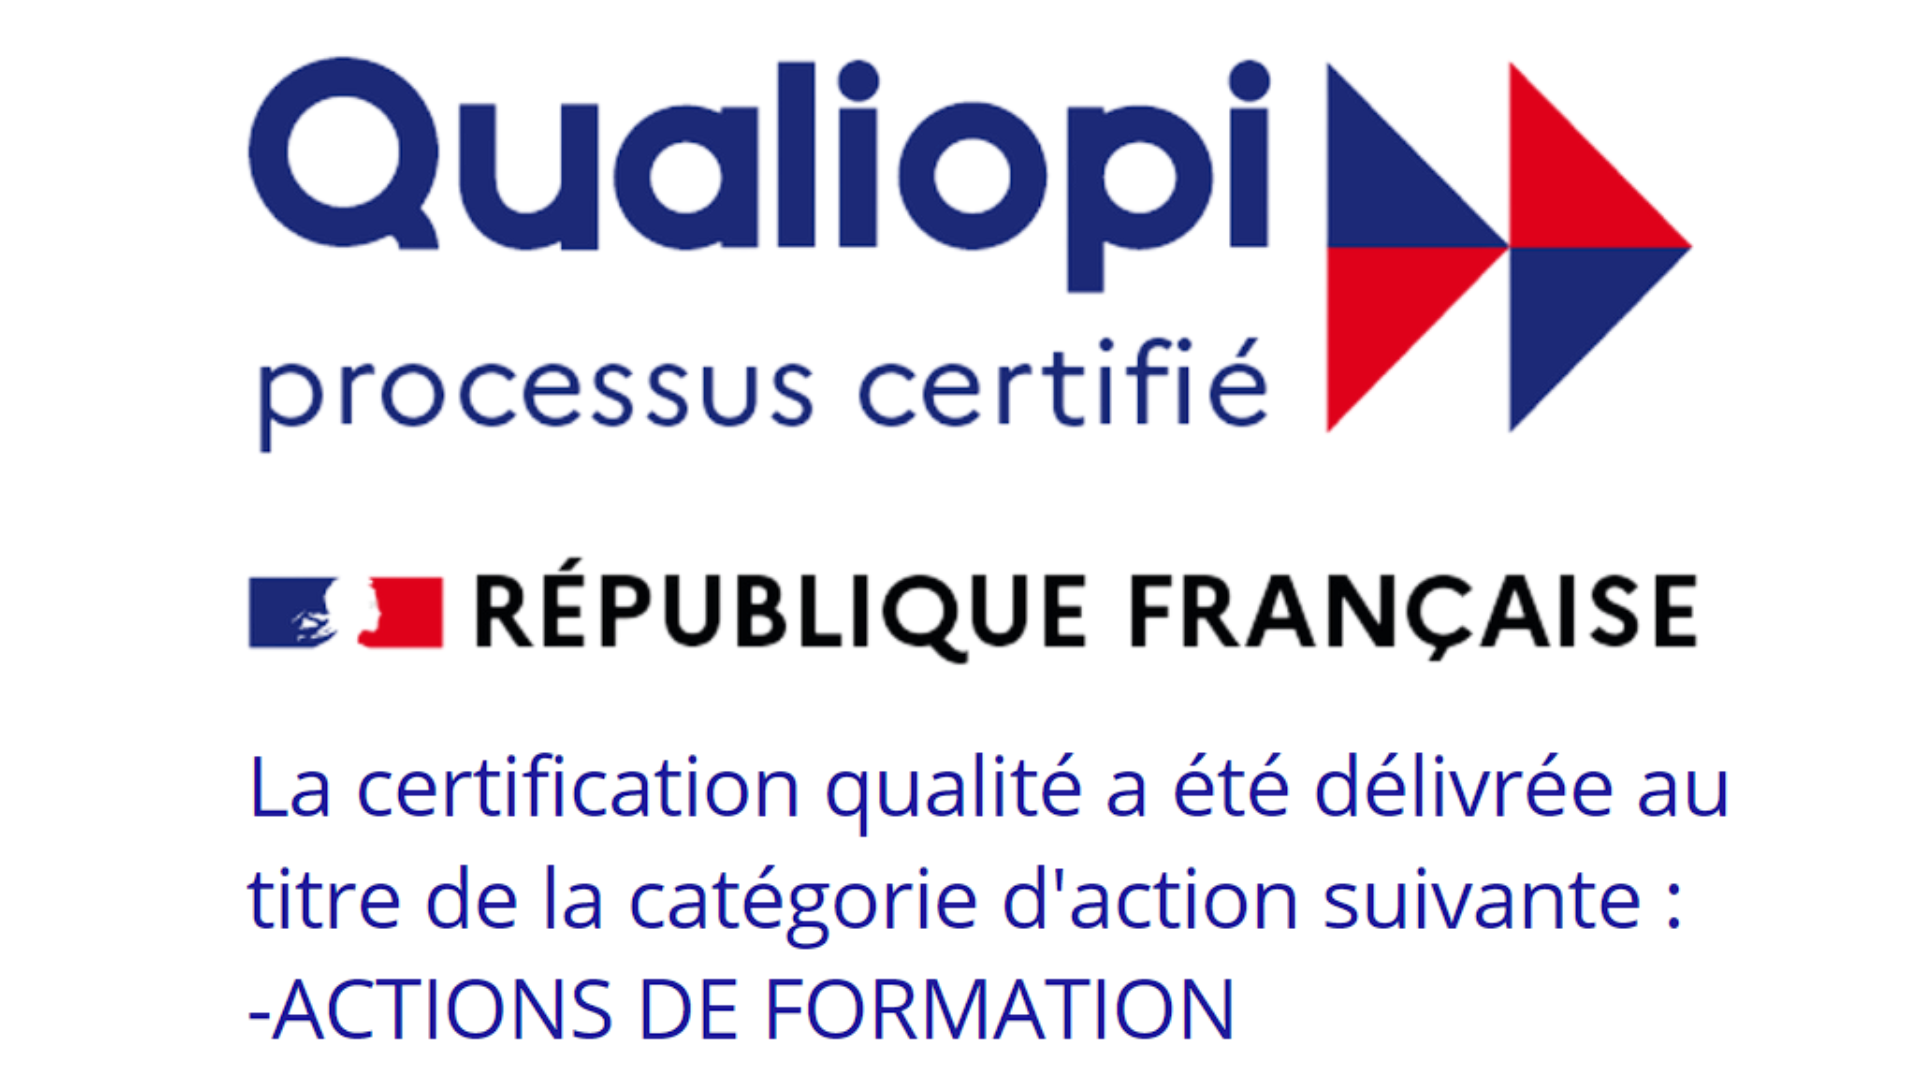 Certification Qualiopi Tetraxion Saint Nazaire